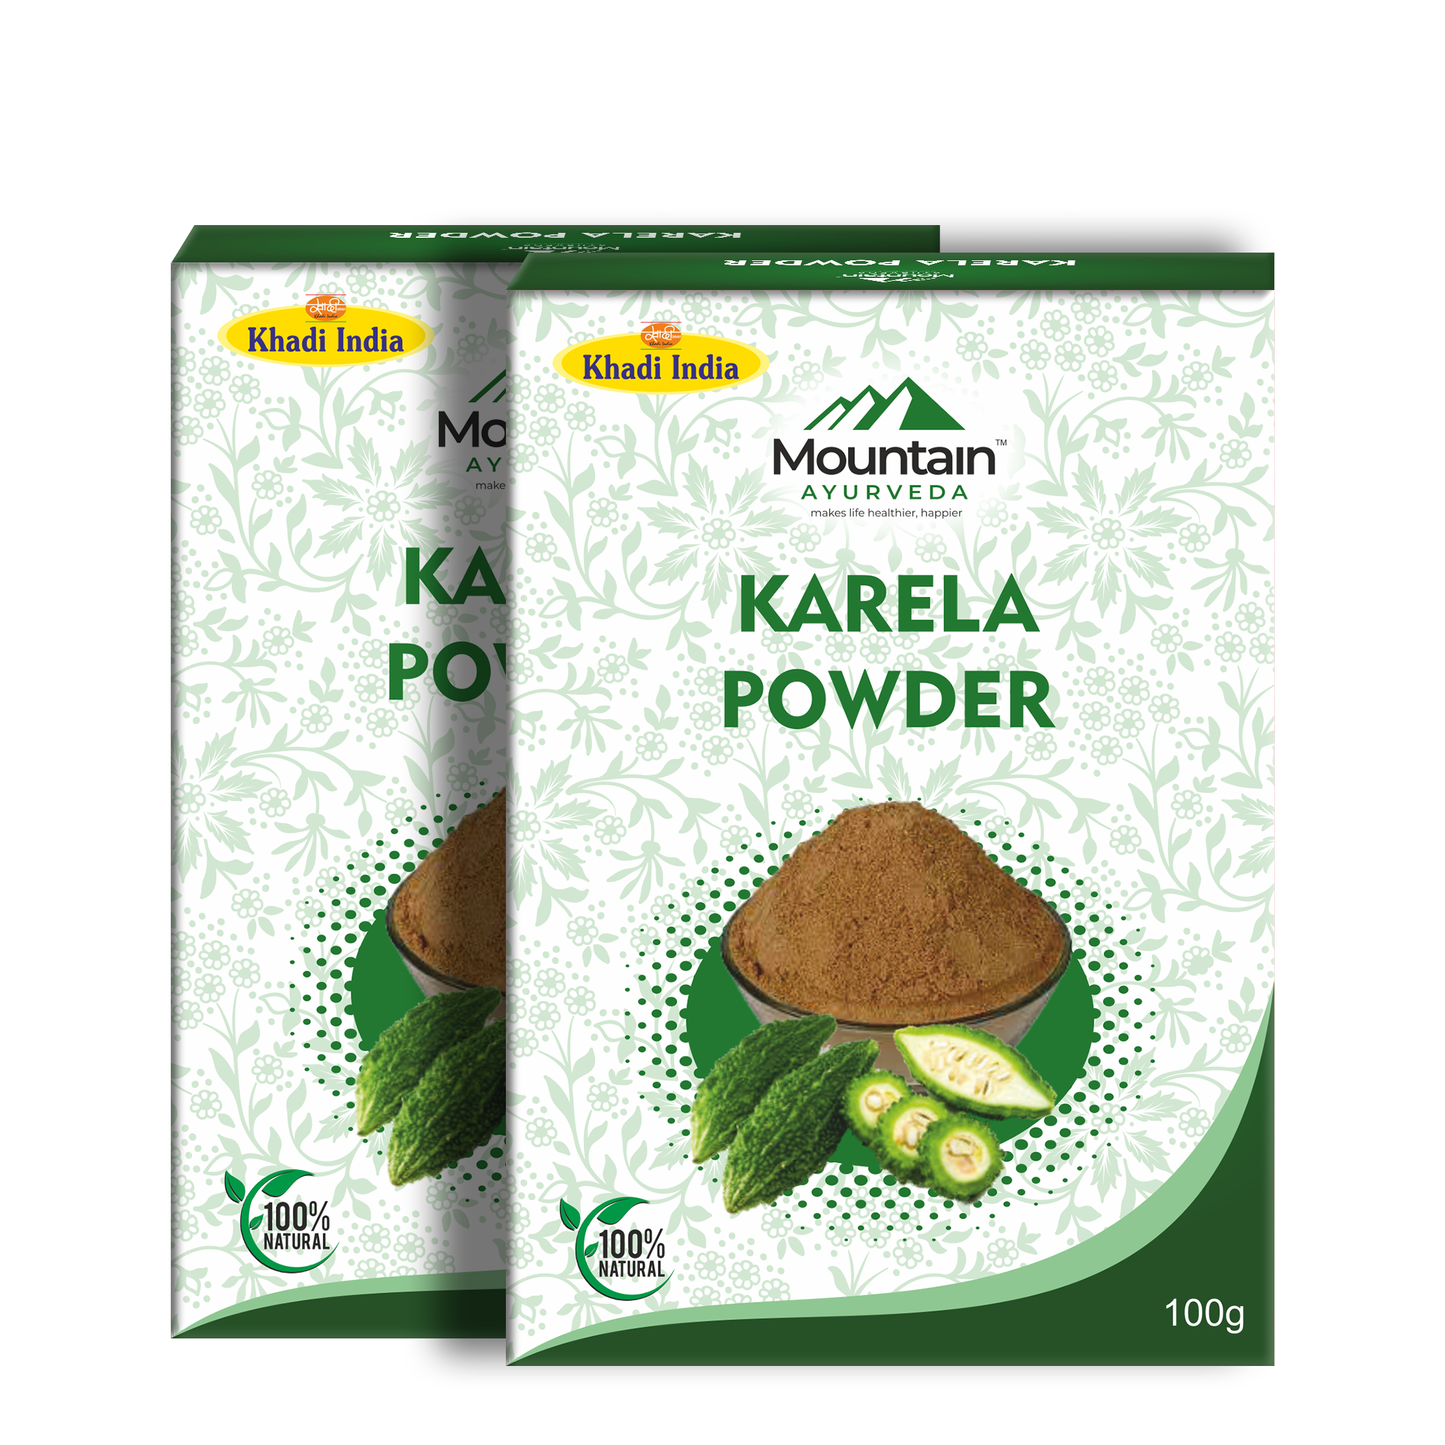 Mountain Ayurveda Karela Powder 100g (Pack of 2)